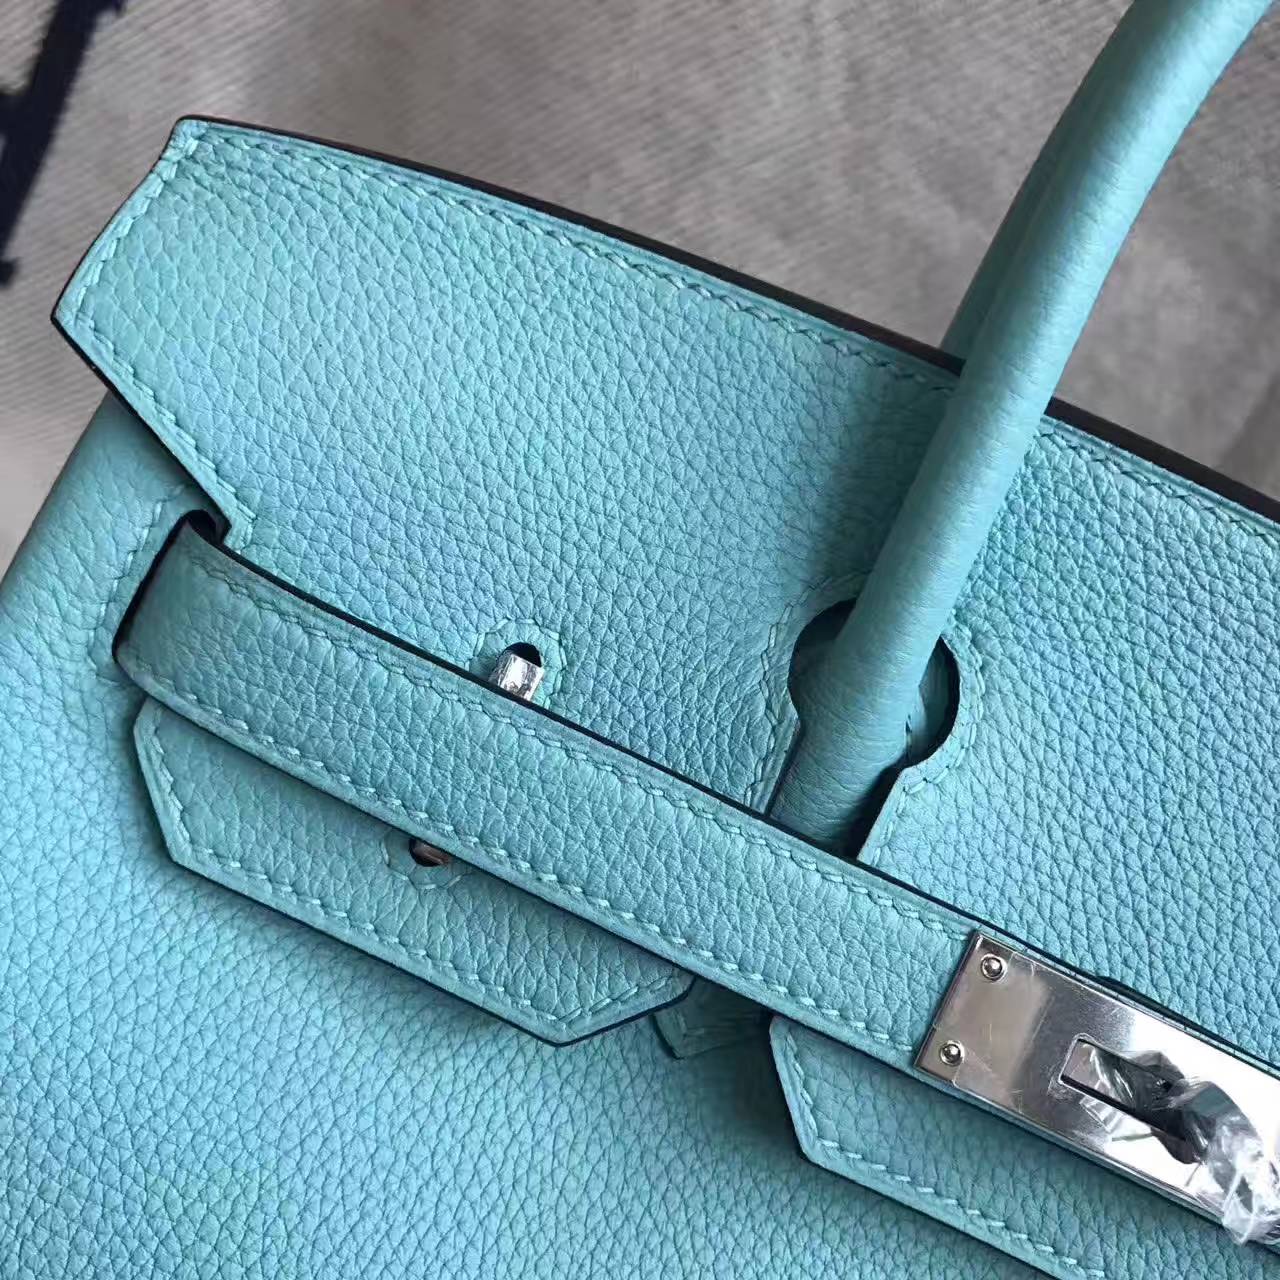 On Sale Hermes 3P Blue Attol Togo Calfskin Leather Birkin Bag 30cm